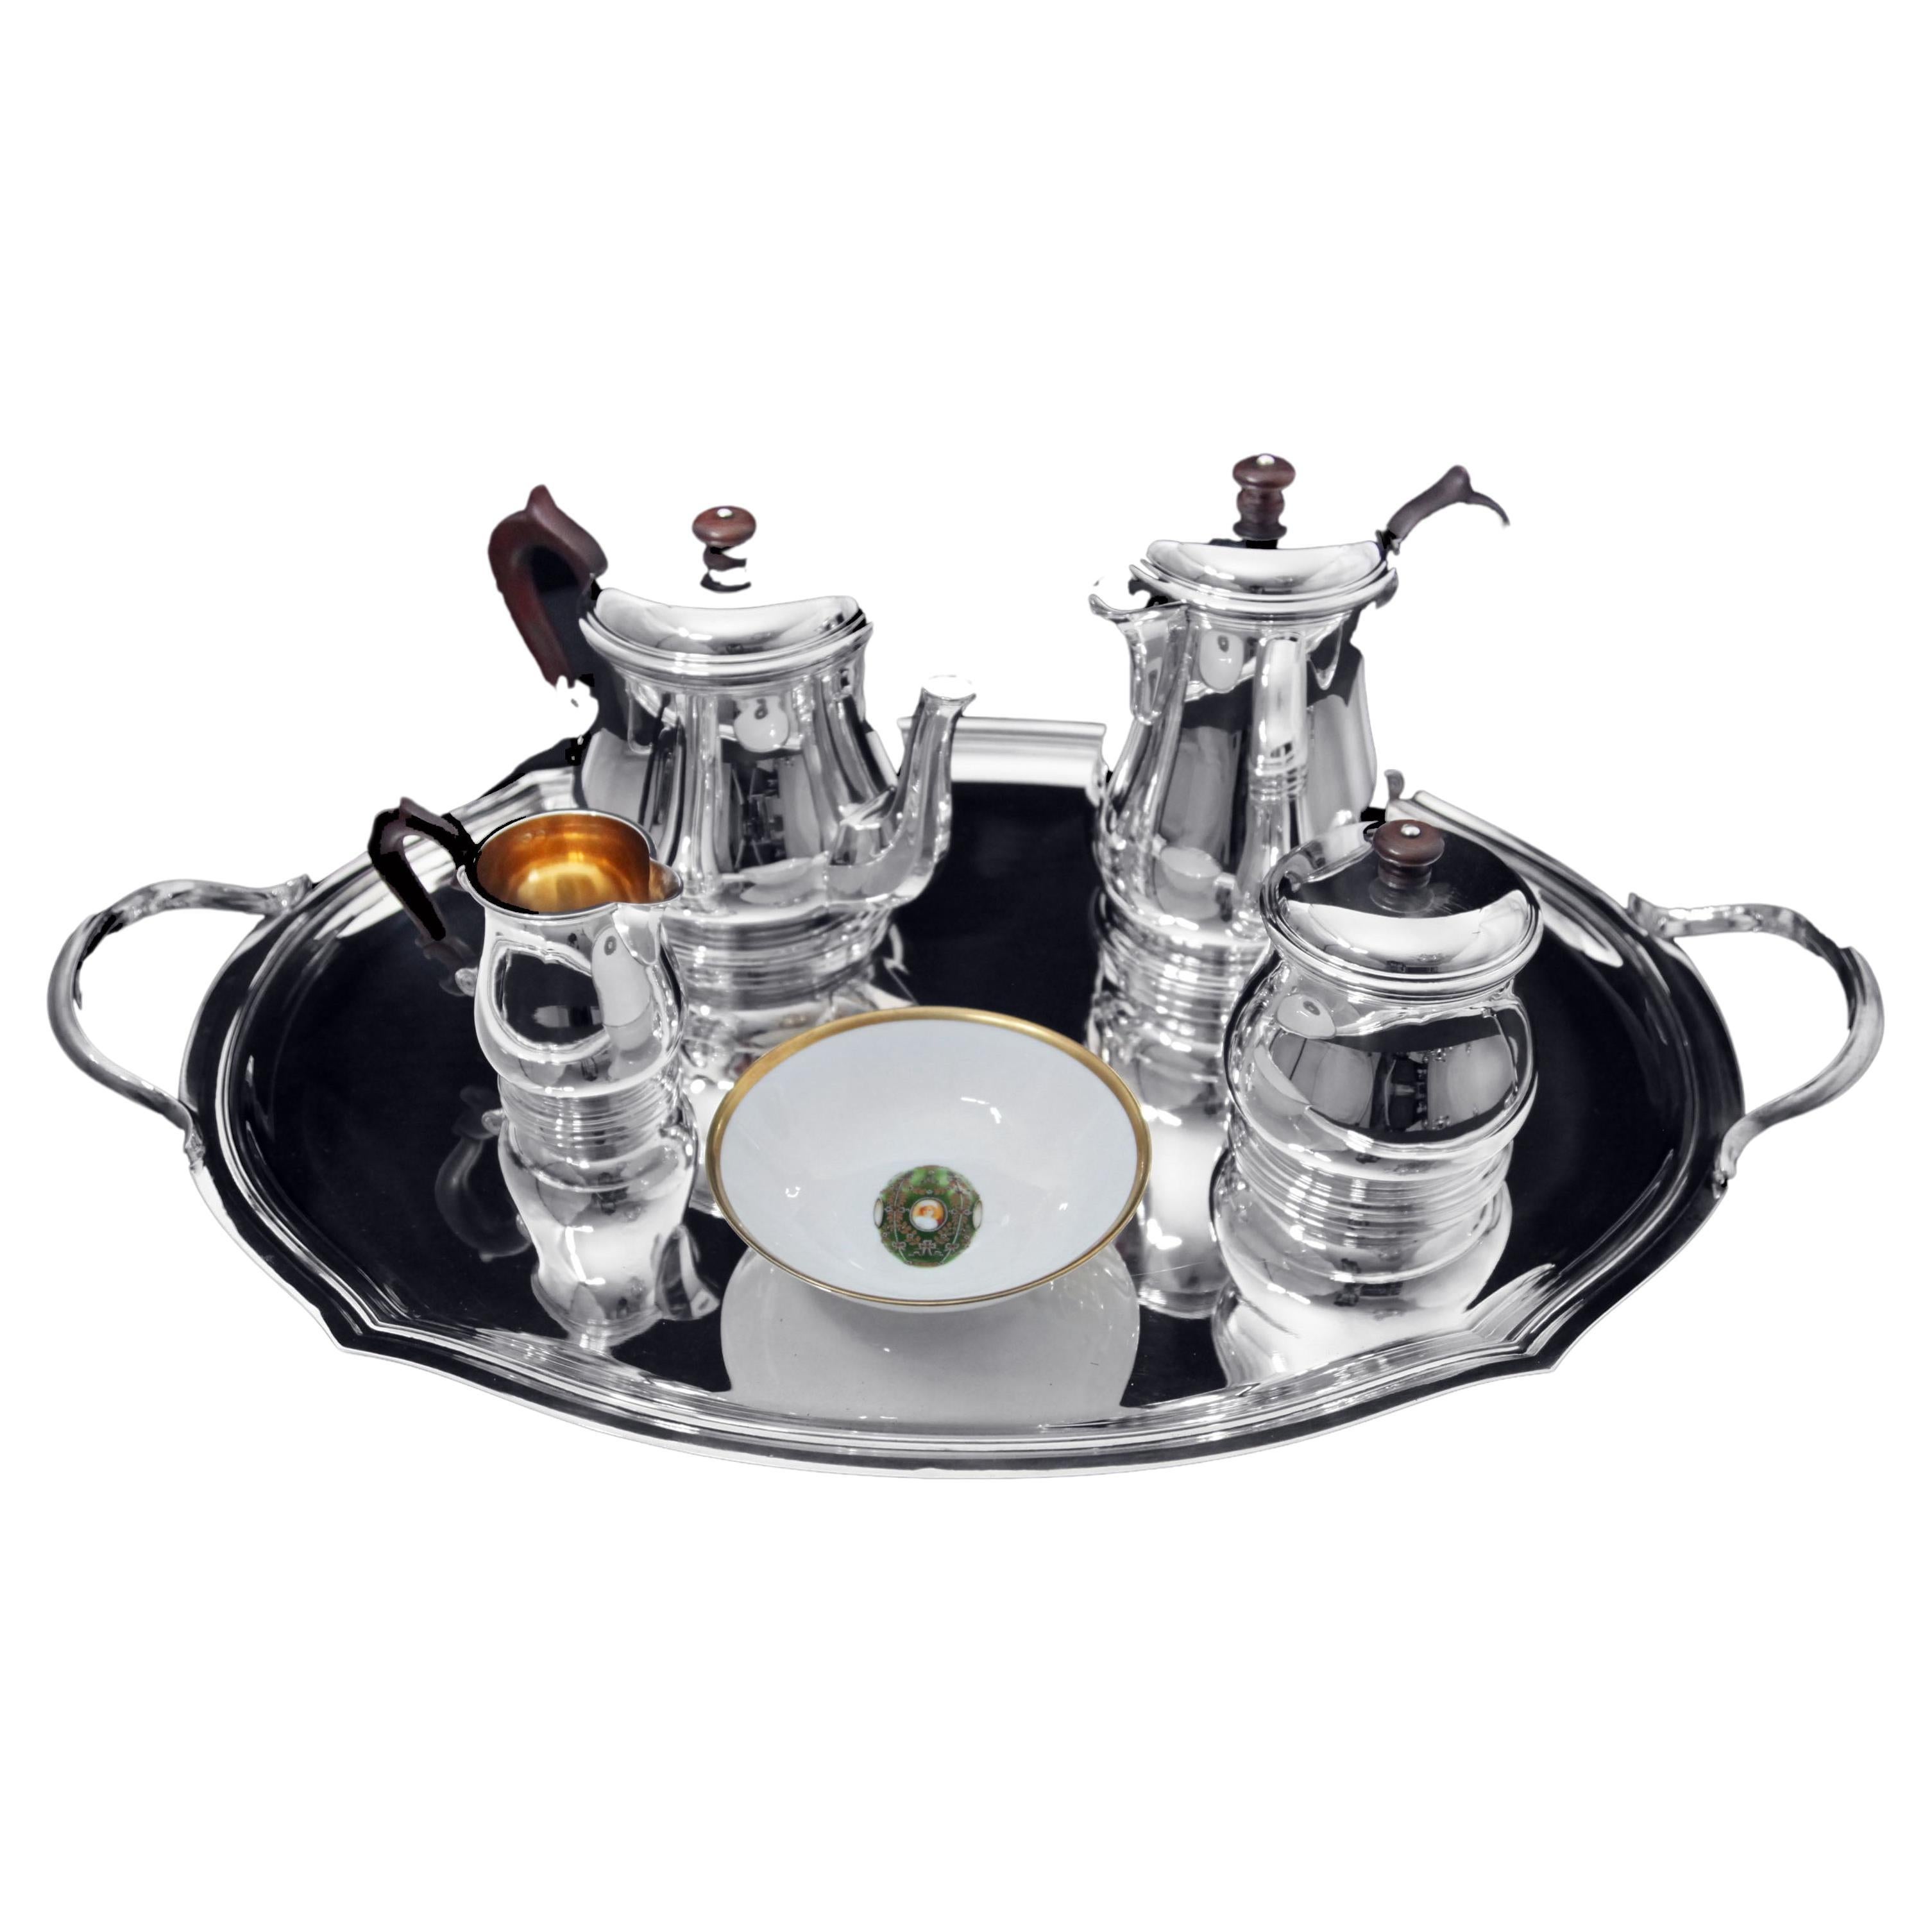 Puiforcat (Hermes), Christofle, Faberge - 5pc. Service à thé en sterling 950 français